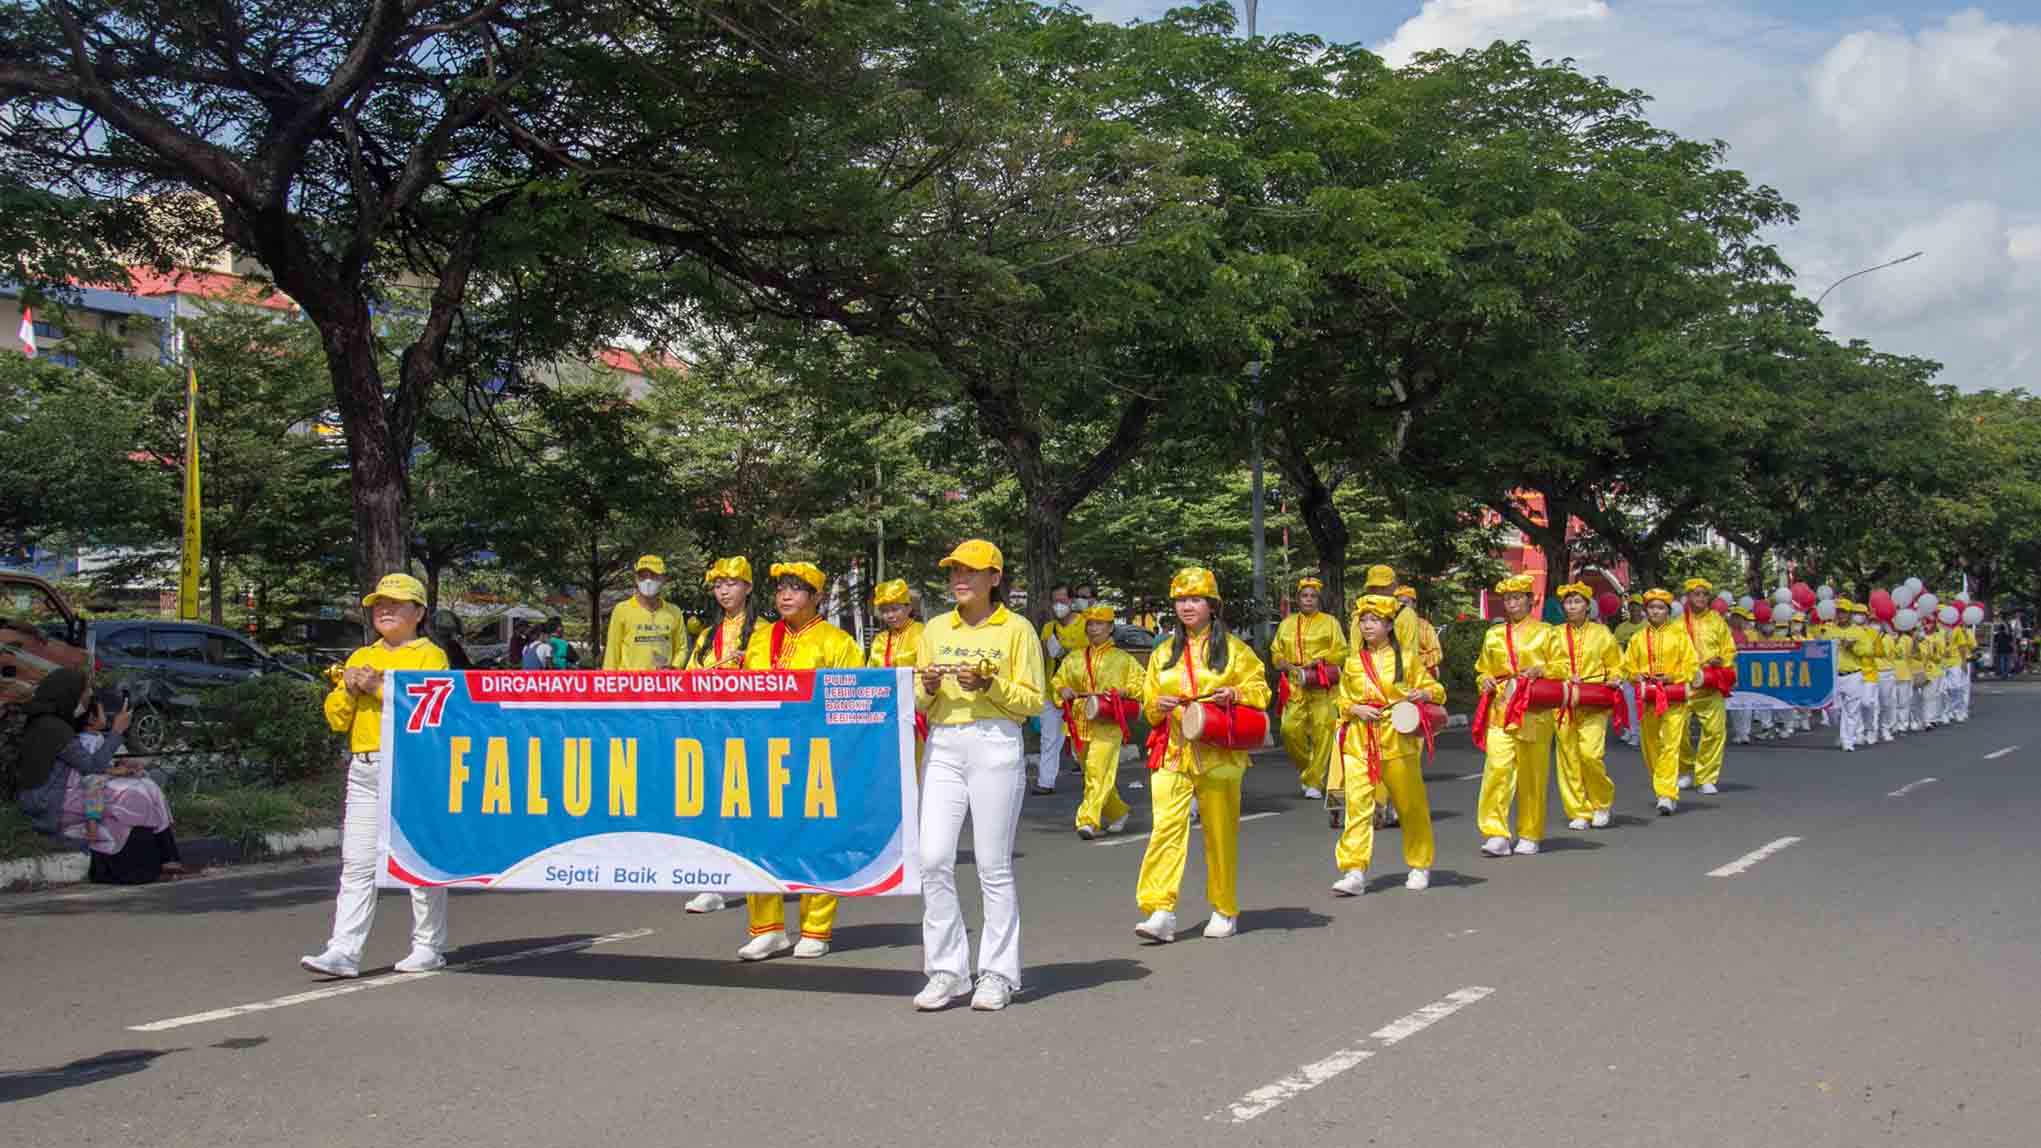 图8：巴淡岛法轮功学员参加了巴淡市政府组织的庆祝印尼第77届独立日的文化游行